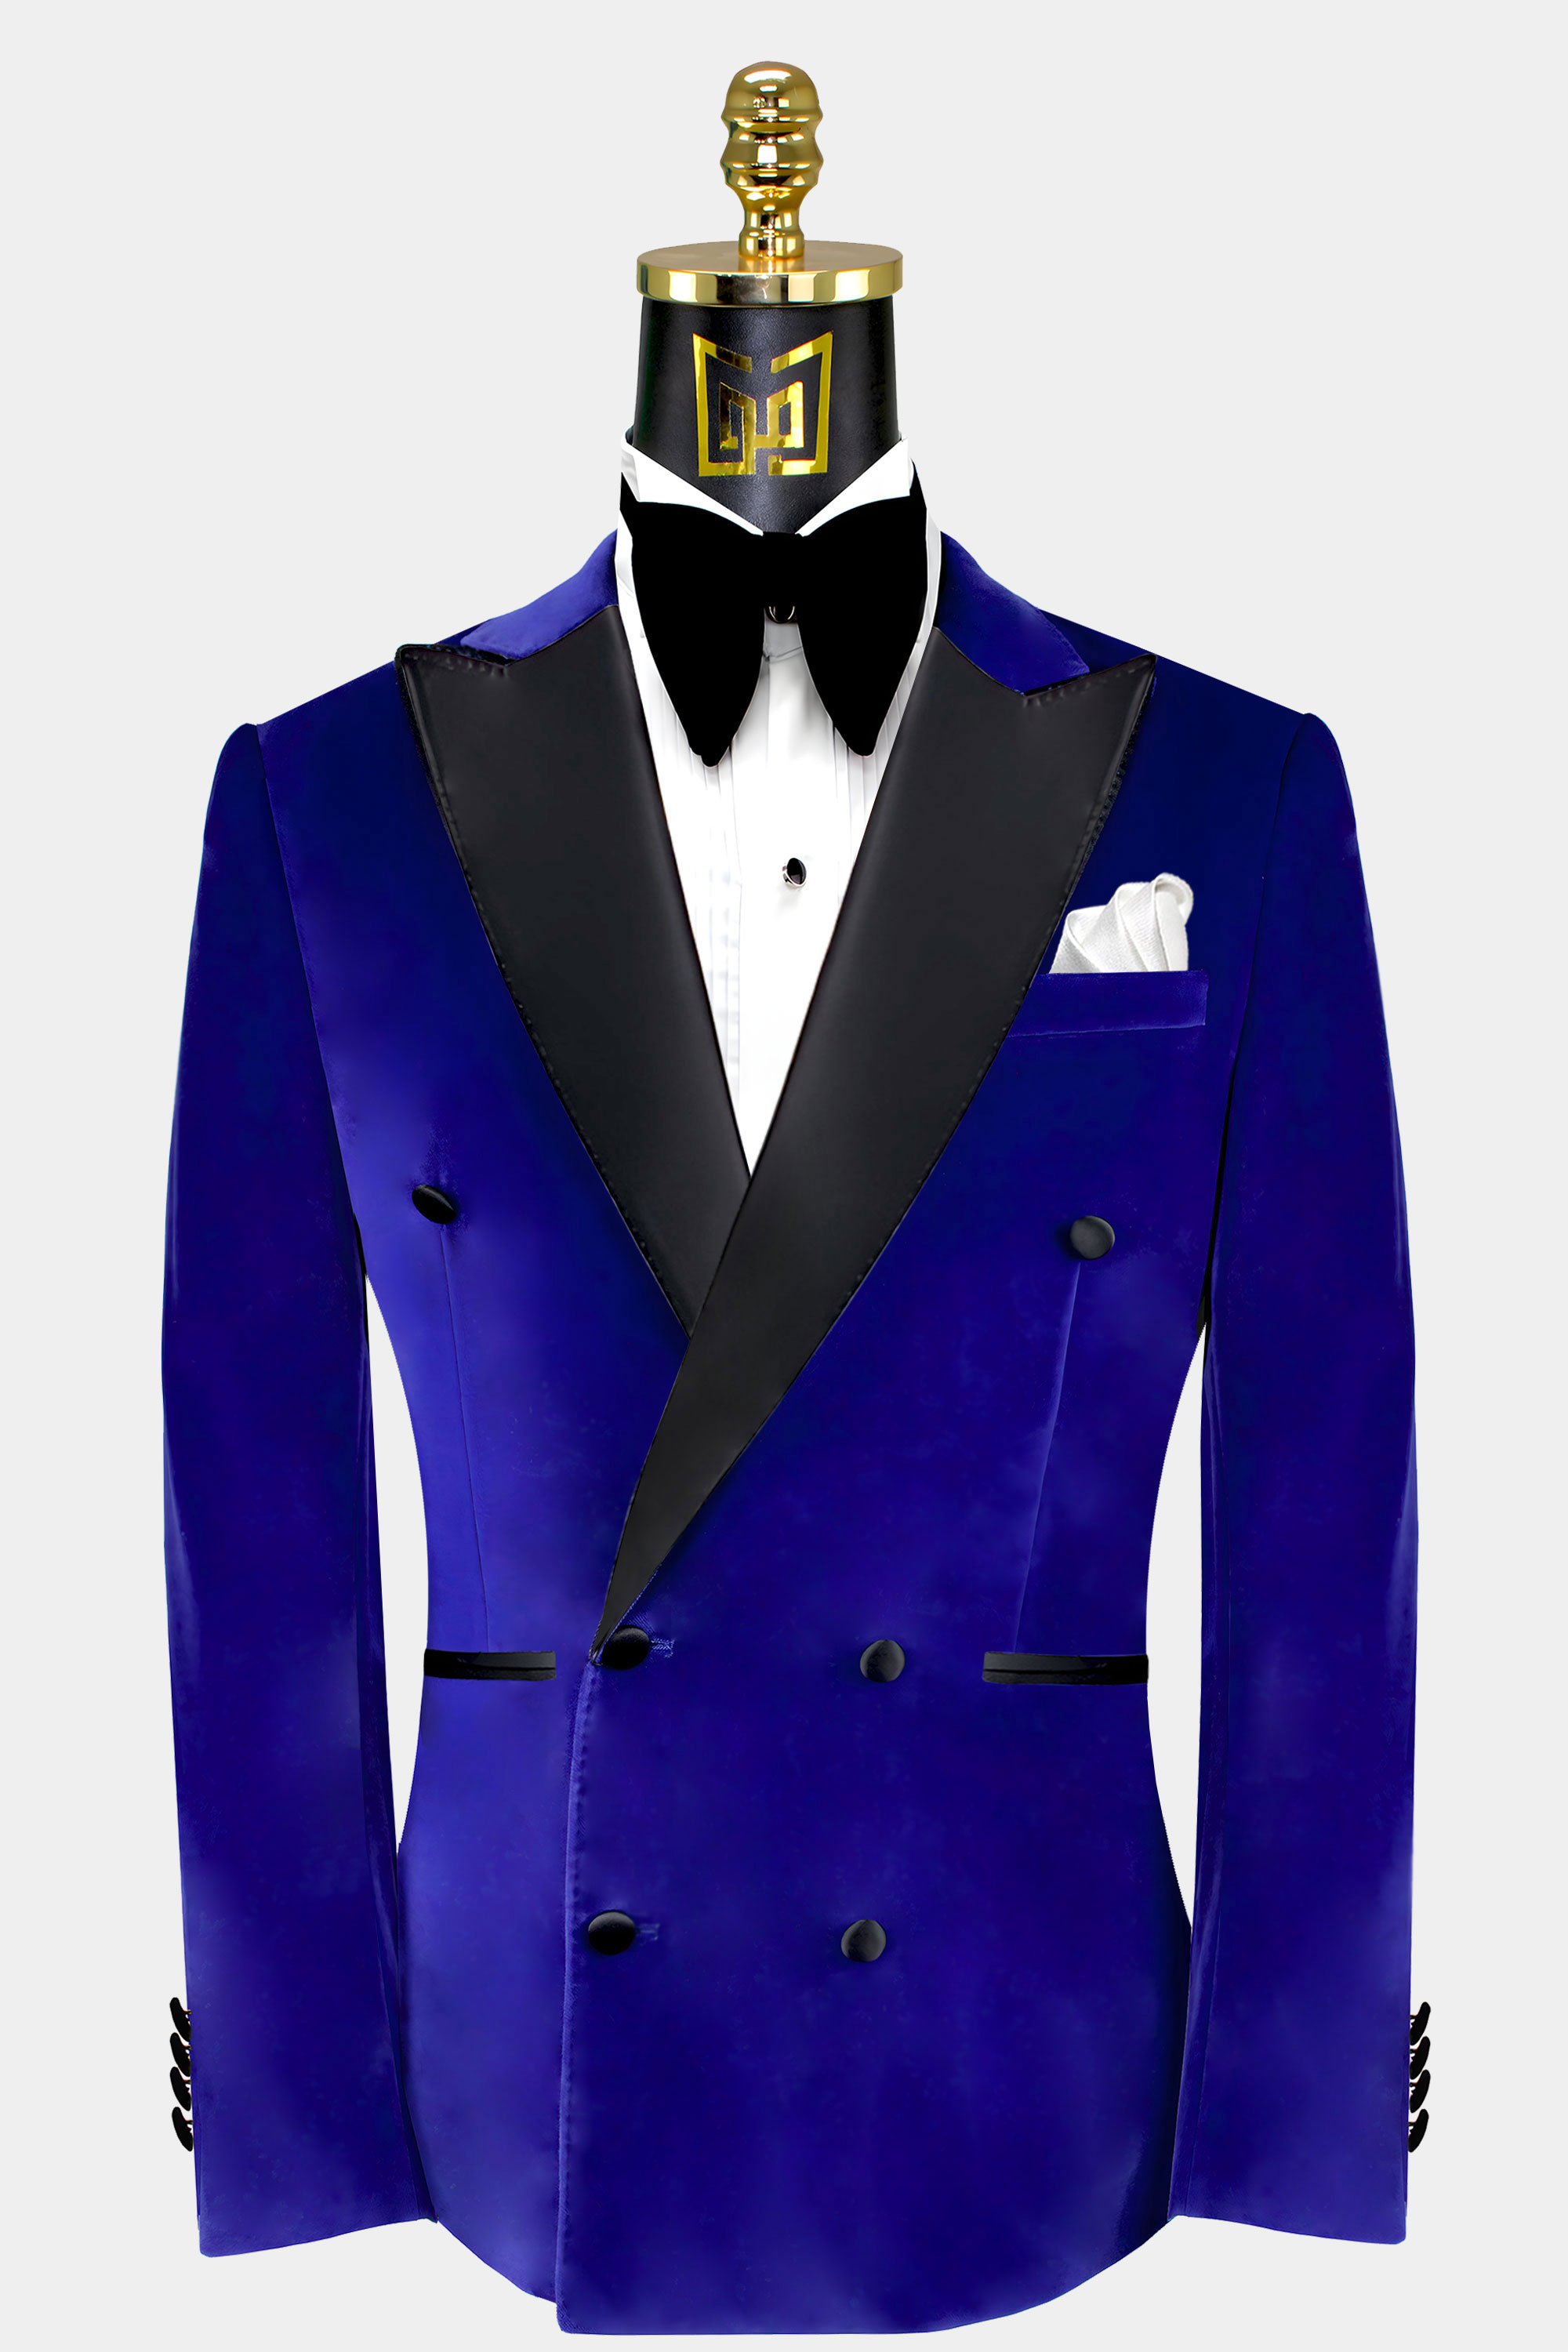 Mens-Double-Breasted-Royal-Blue-Velvetl-Tuxedo-Jacket-Groom-Wedding-Dinner-Blazer-from-Gentlemansguru.com